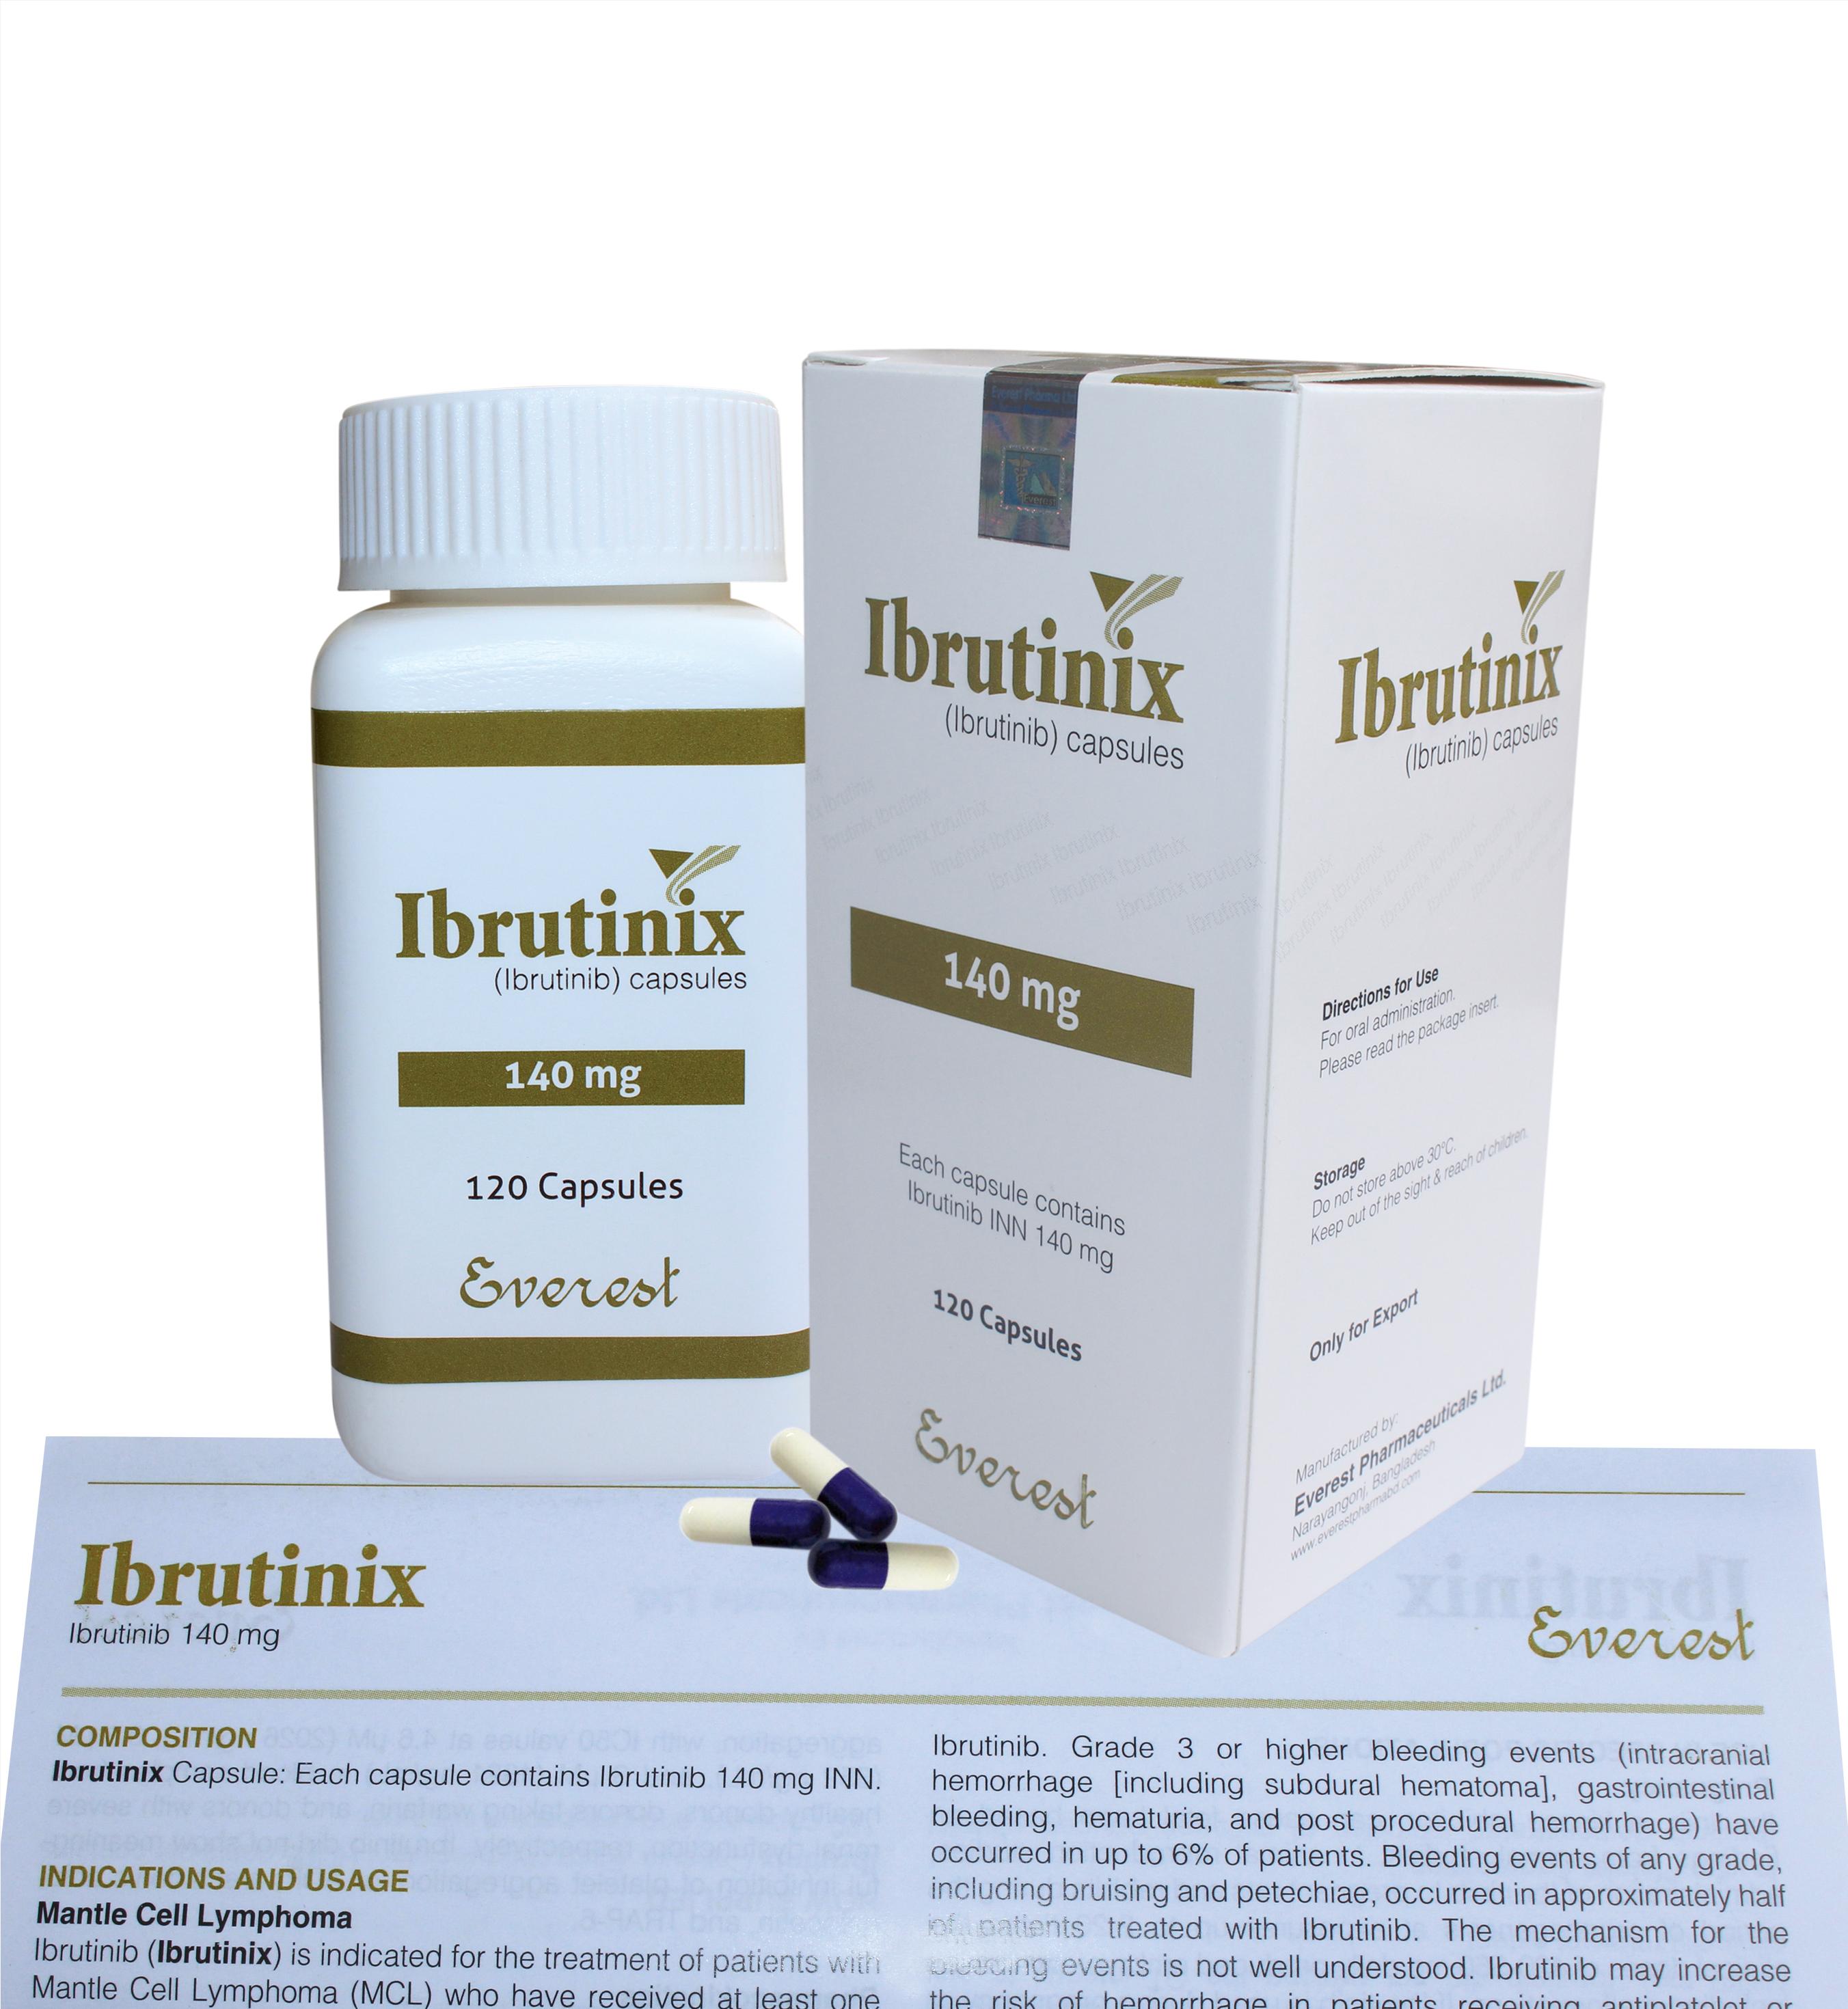 Thuốc Ibrutinix thuốc Ibrutinib 140mg giá bao nhiêu mua ở đâu?